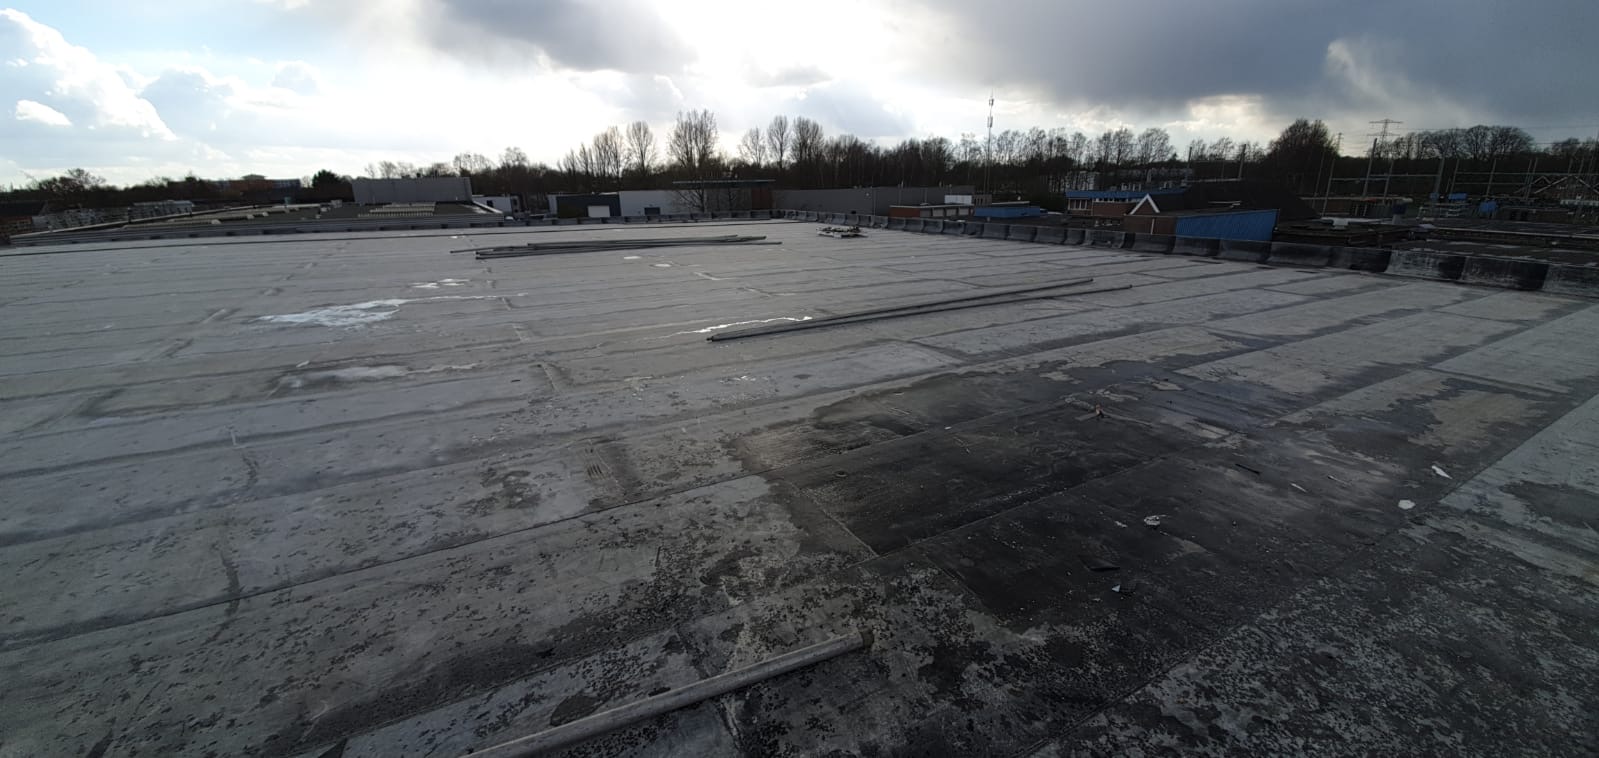 Veldscholten Dakbekking gereed met dak nieuwe bedrijfshal VST BV HENGELO 6